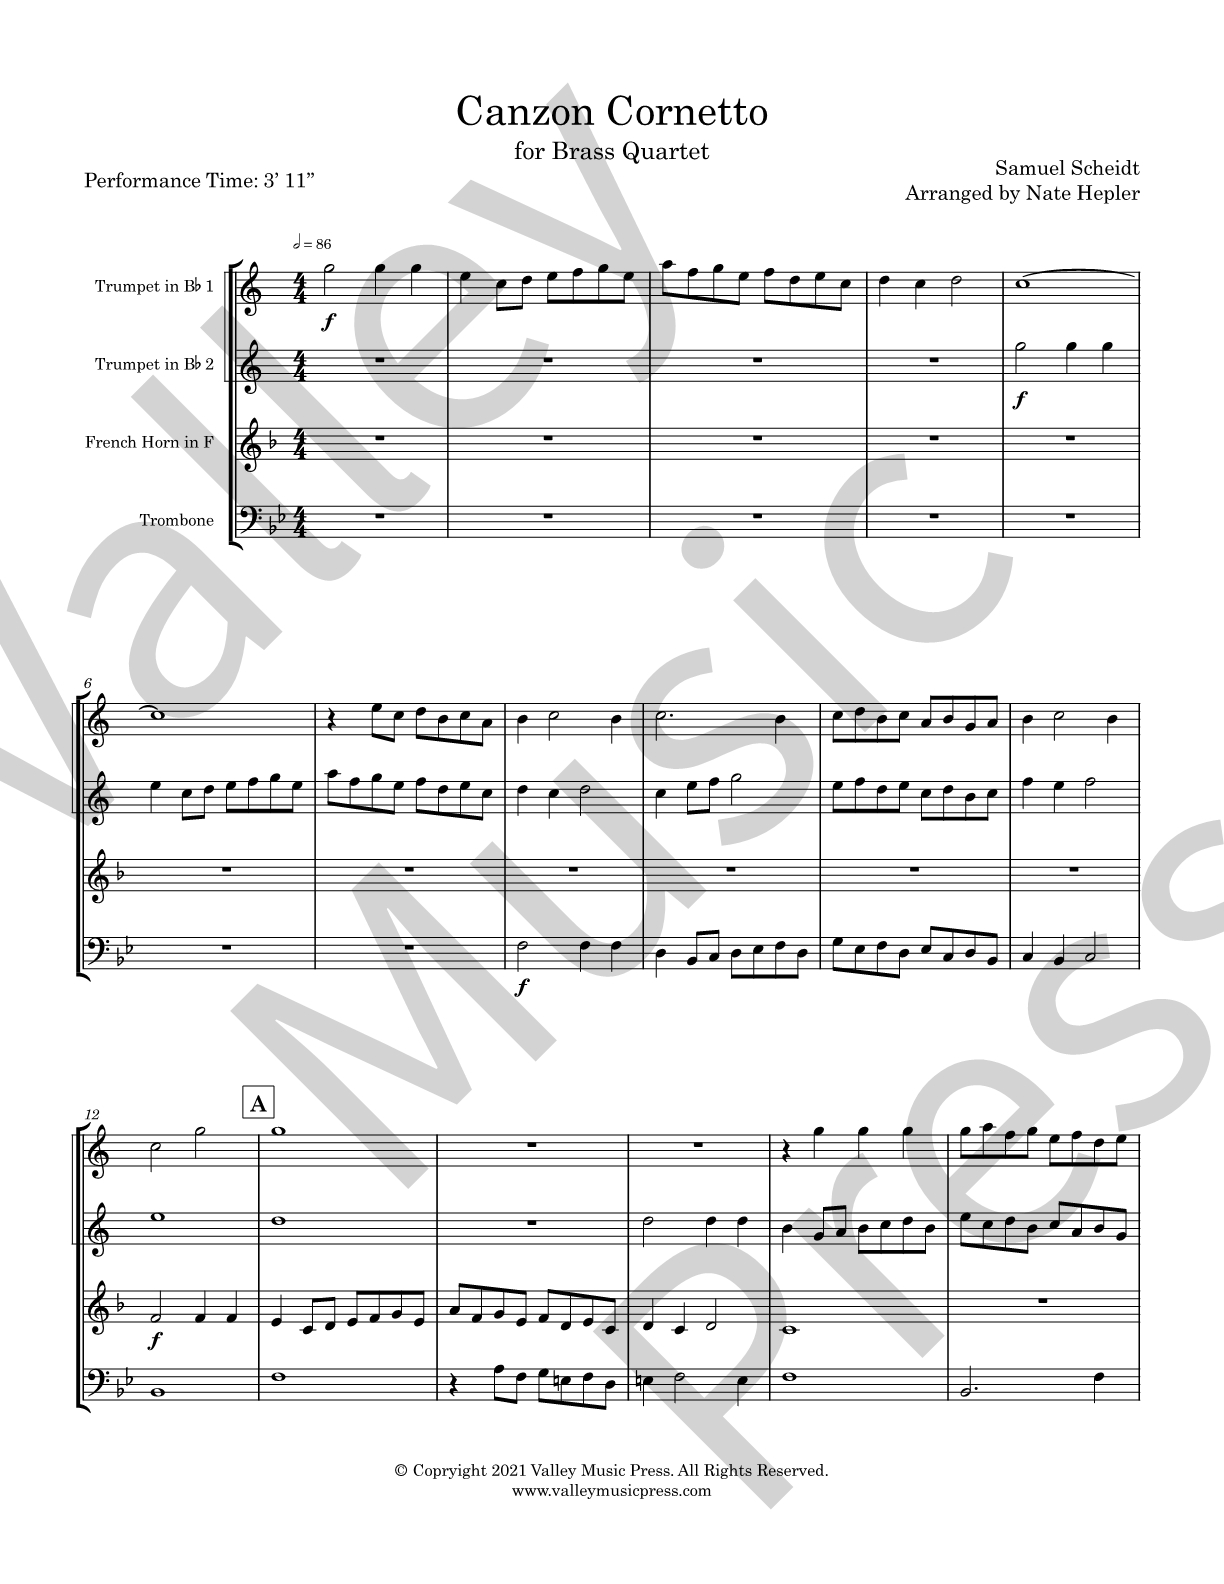 Scheidt - Canzon Cornetto (Brass Quartet)